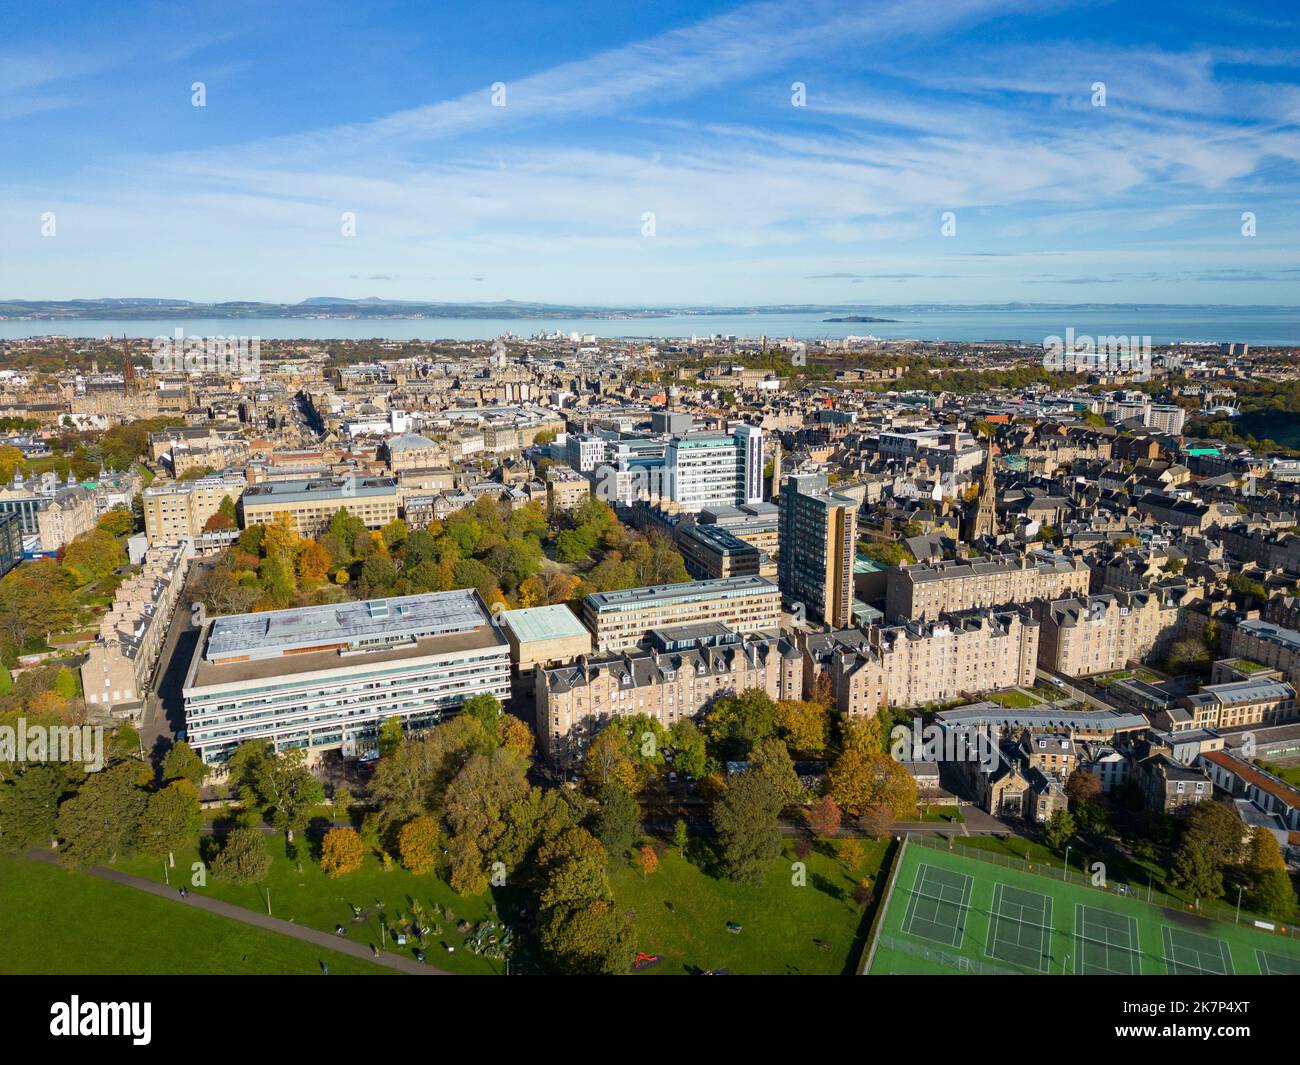 Vue aérienne du campus de l'université d'Édimbourg, Edimbourg, Écosse, Royaume-Uni Banque D'Images